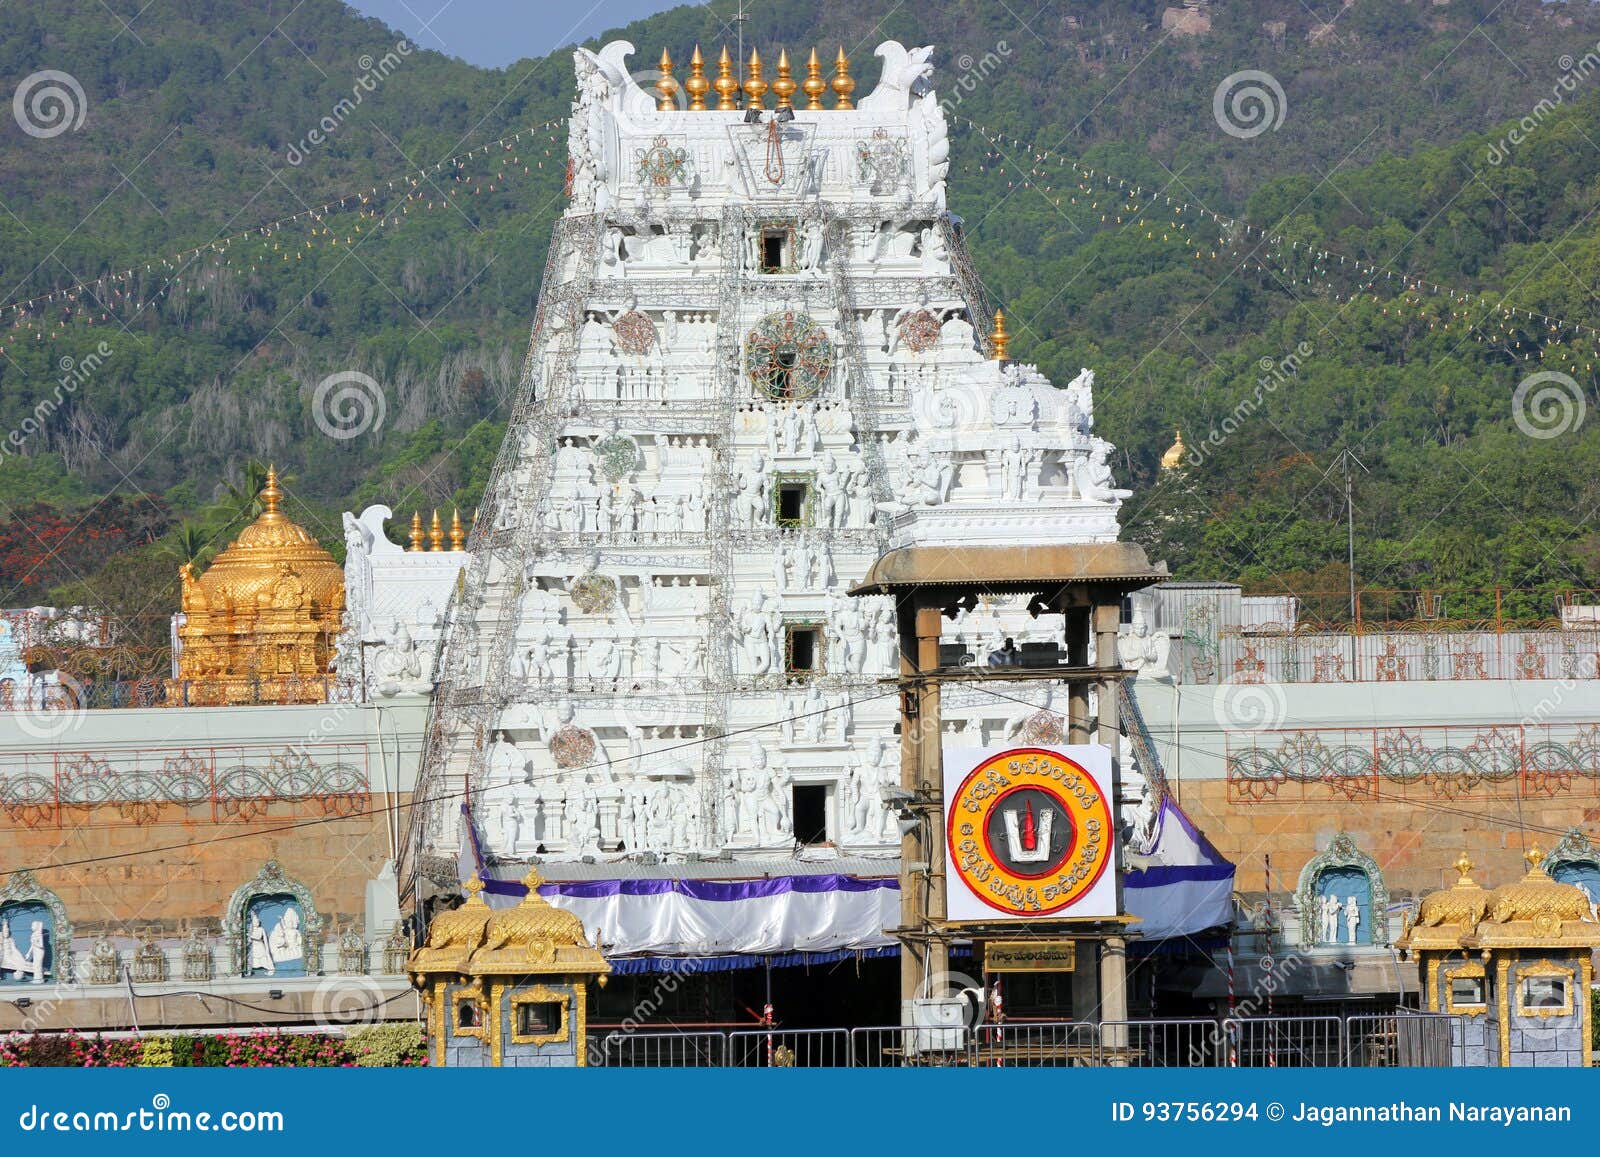 hindu temple for lord balaji, tirupati, andhra pradesh, india